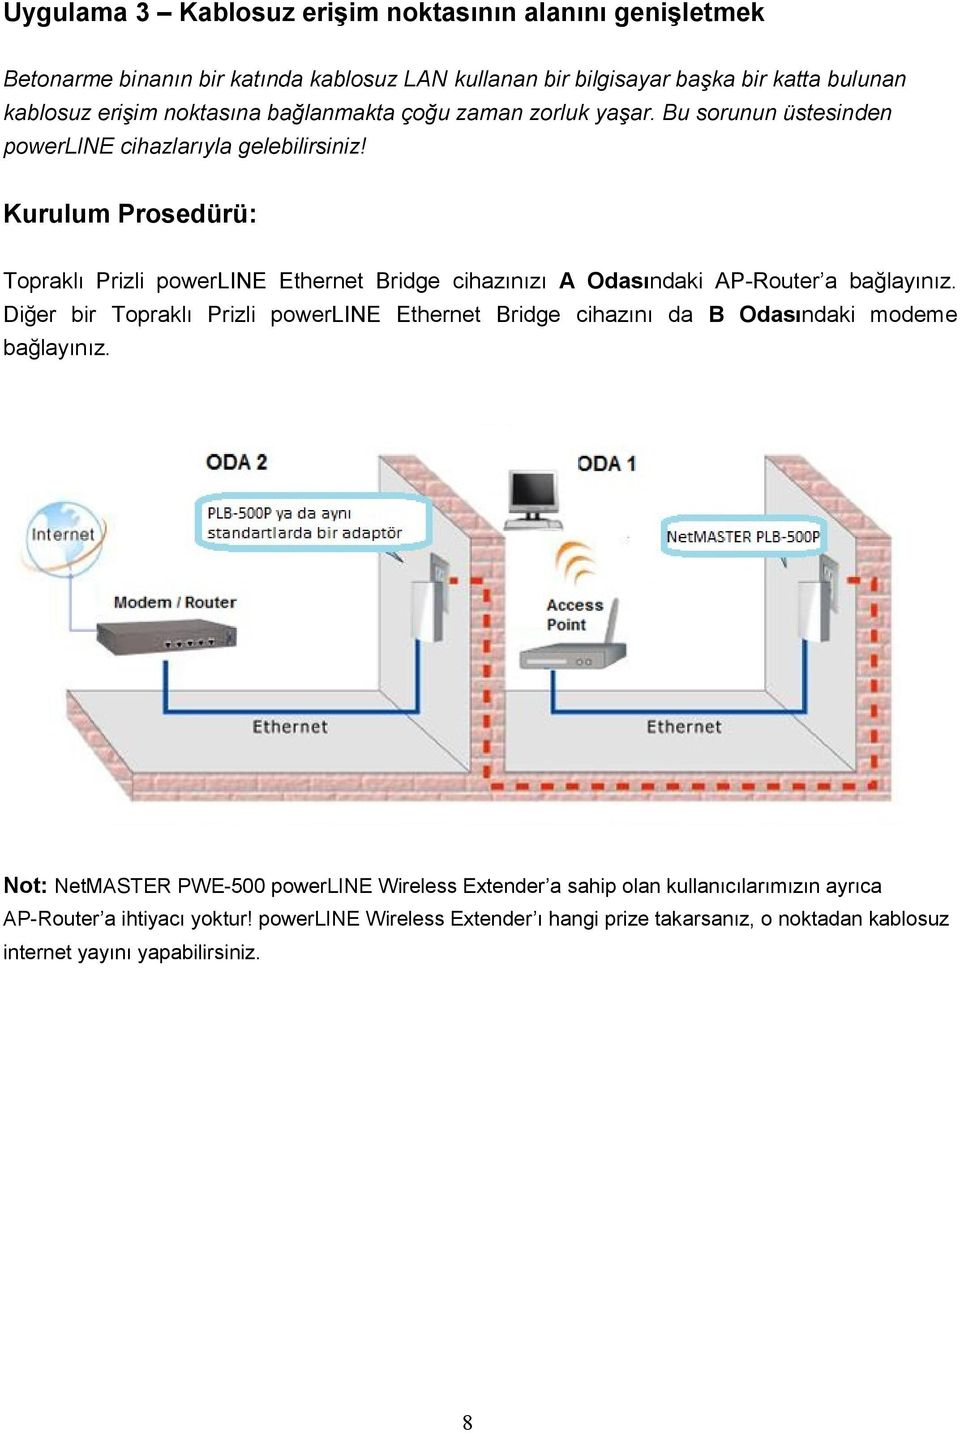 Kurulum Prosedürü: Topraklı Prizli powerline Ethernet Bridge cihazınızı A Odasındaki AP-Router a bağlayınız.